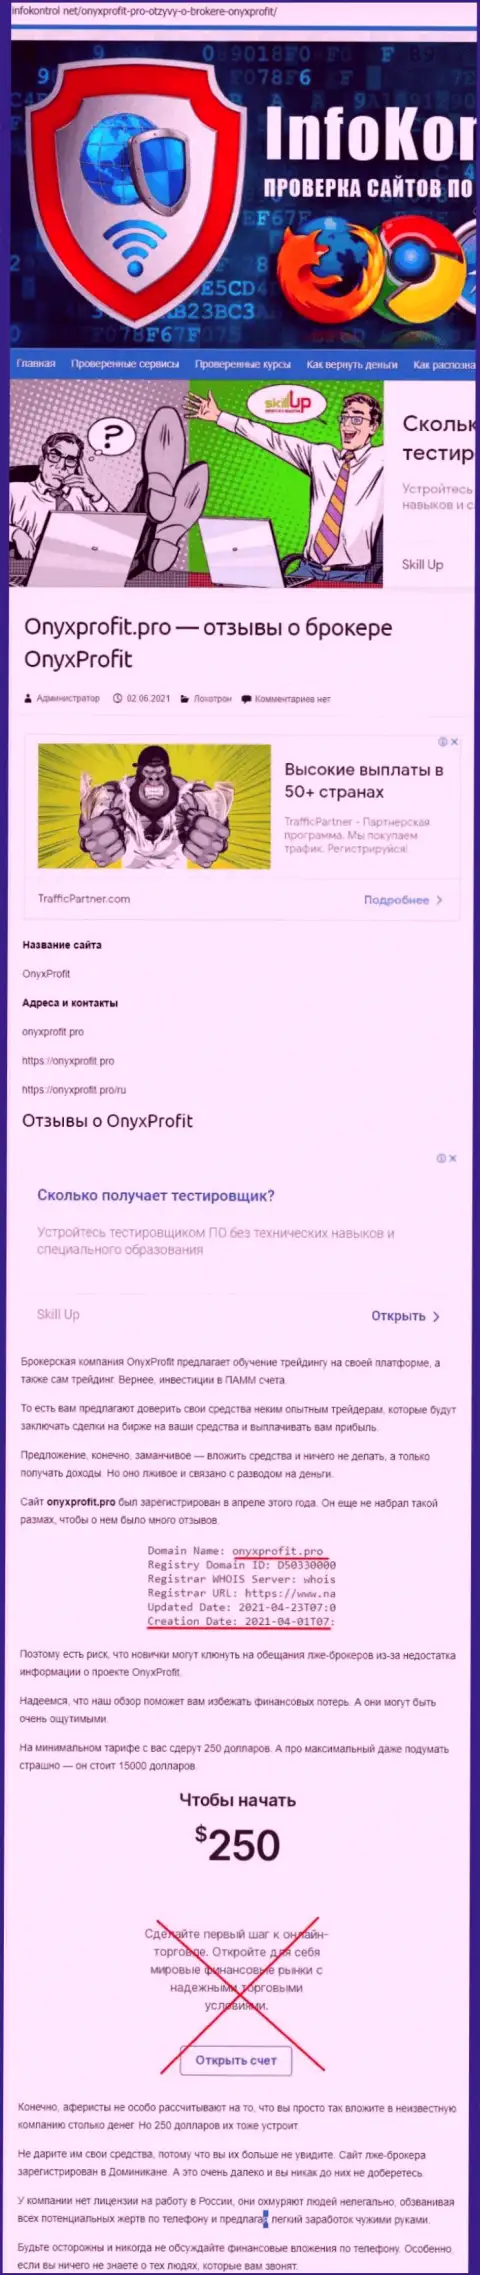 OnyxProfit - это очередной лохотрон, на который вестись довольно-таки опасно (обзор мошеннических деяний конторы)